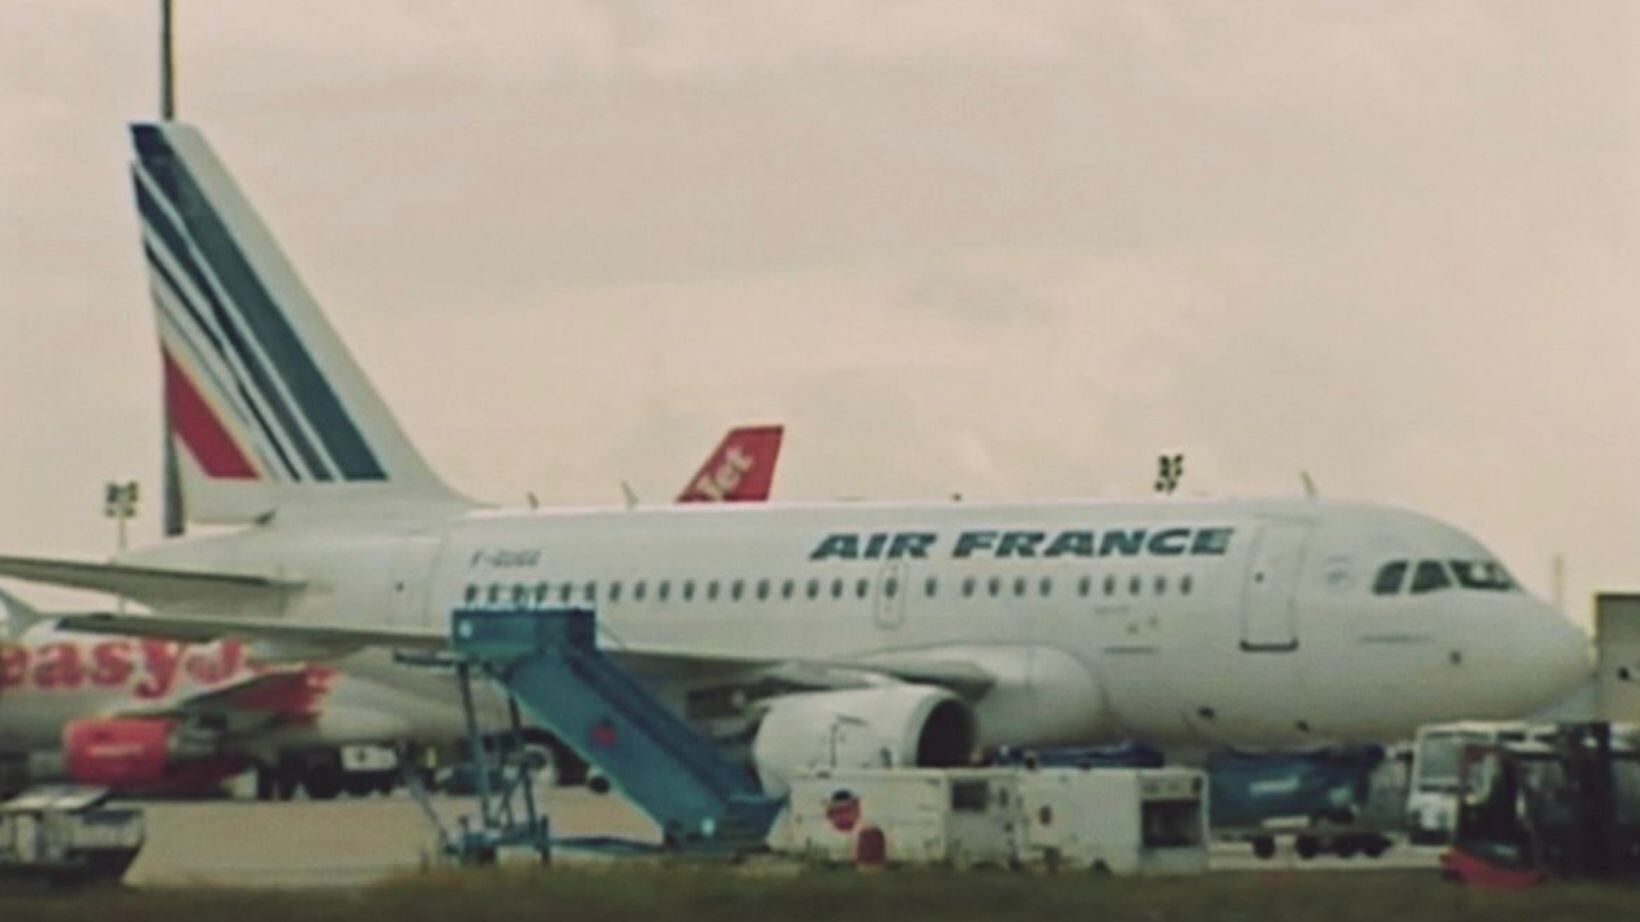 Documentário Rio-Paris - A Tragédia do voo 447 aparece entre os assuntos mais procurados no Gloogle